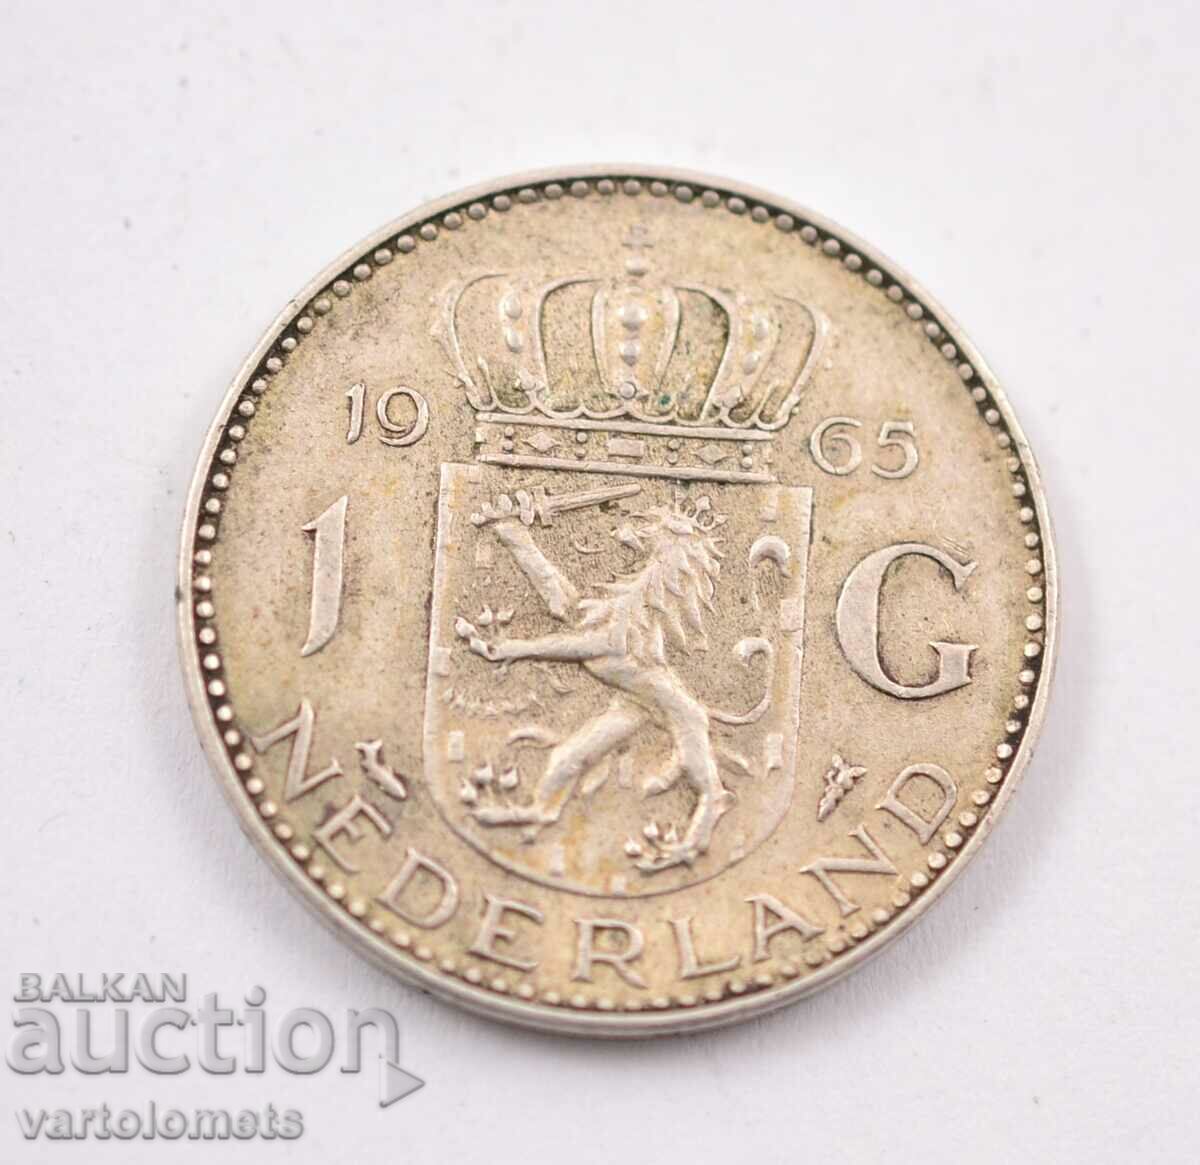 1 guilder, 1965 Silver 0.720, 6.5g, ø 25mm - Netherlands